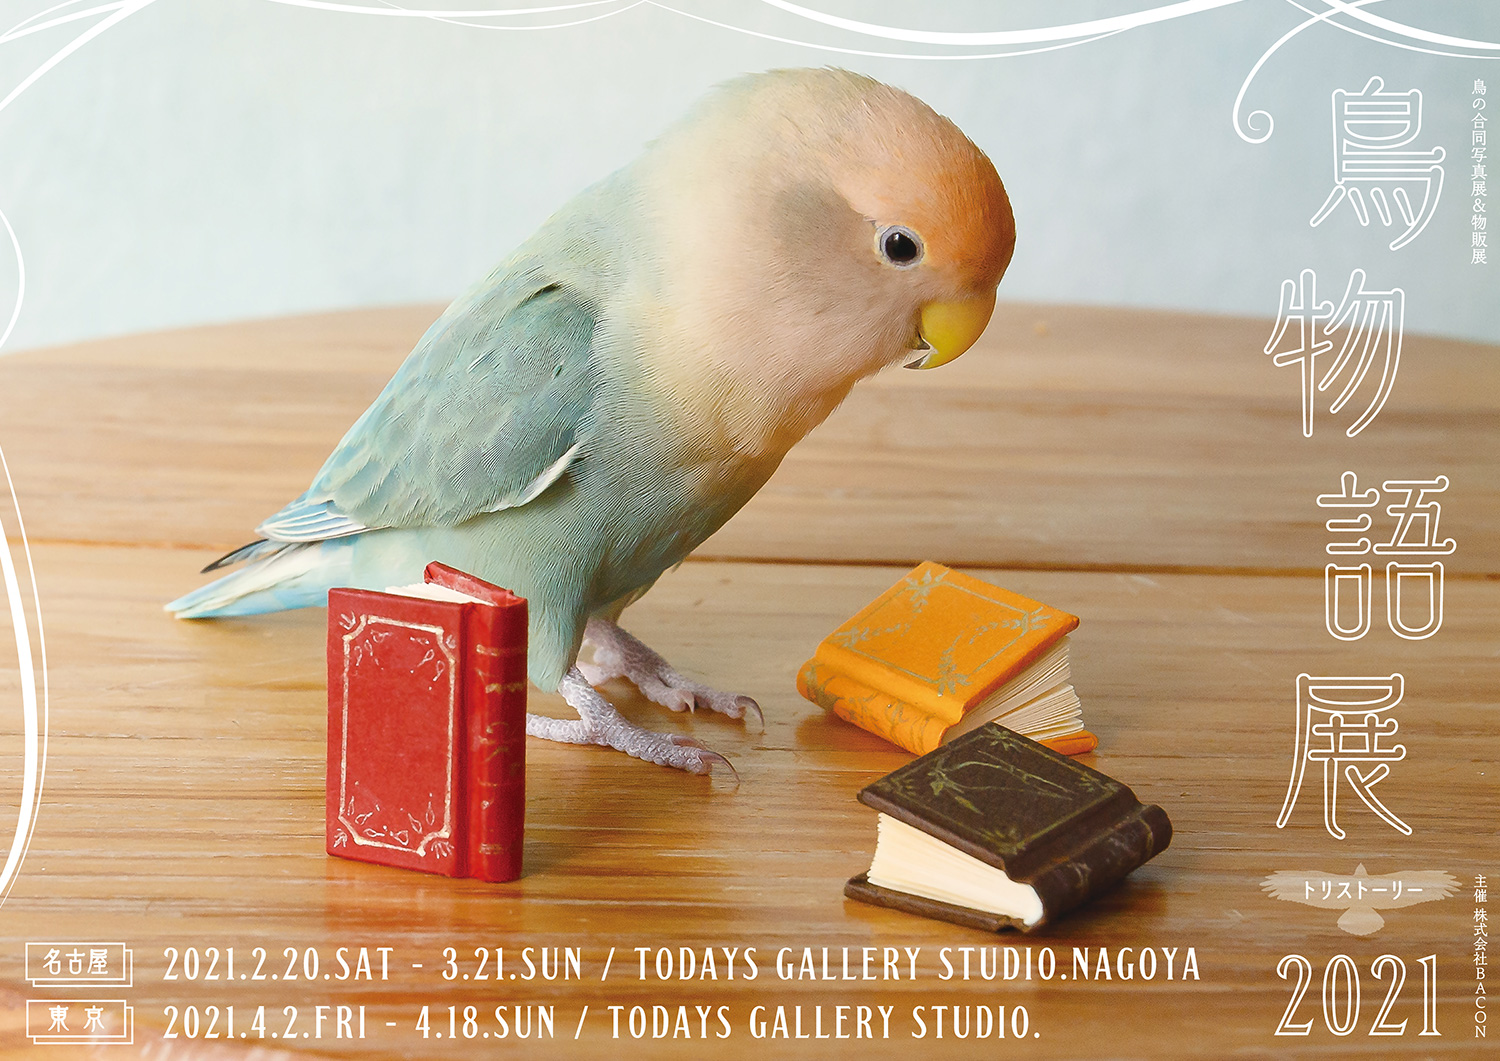 可愛い小鳥から野鳥まで 鳥物語トリストーリー展 21 が名古屋 東京で開催 ガジェット通信 Getnews